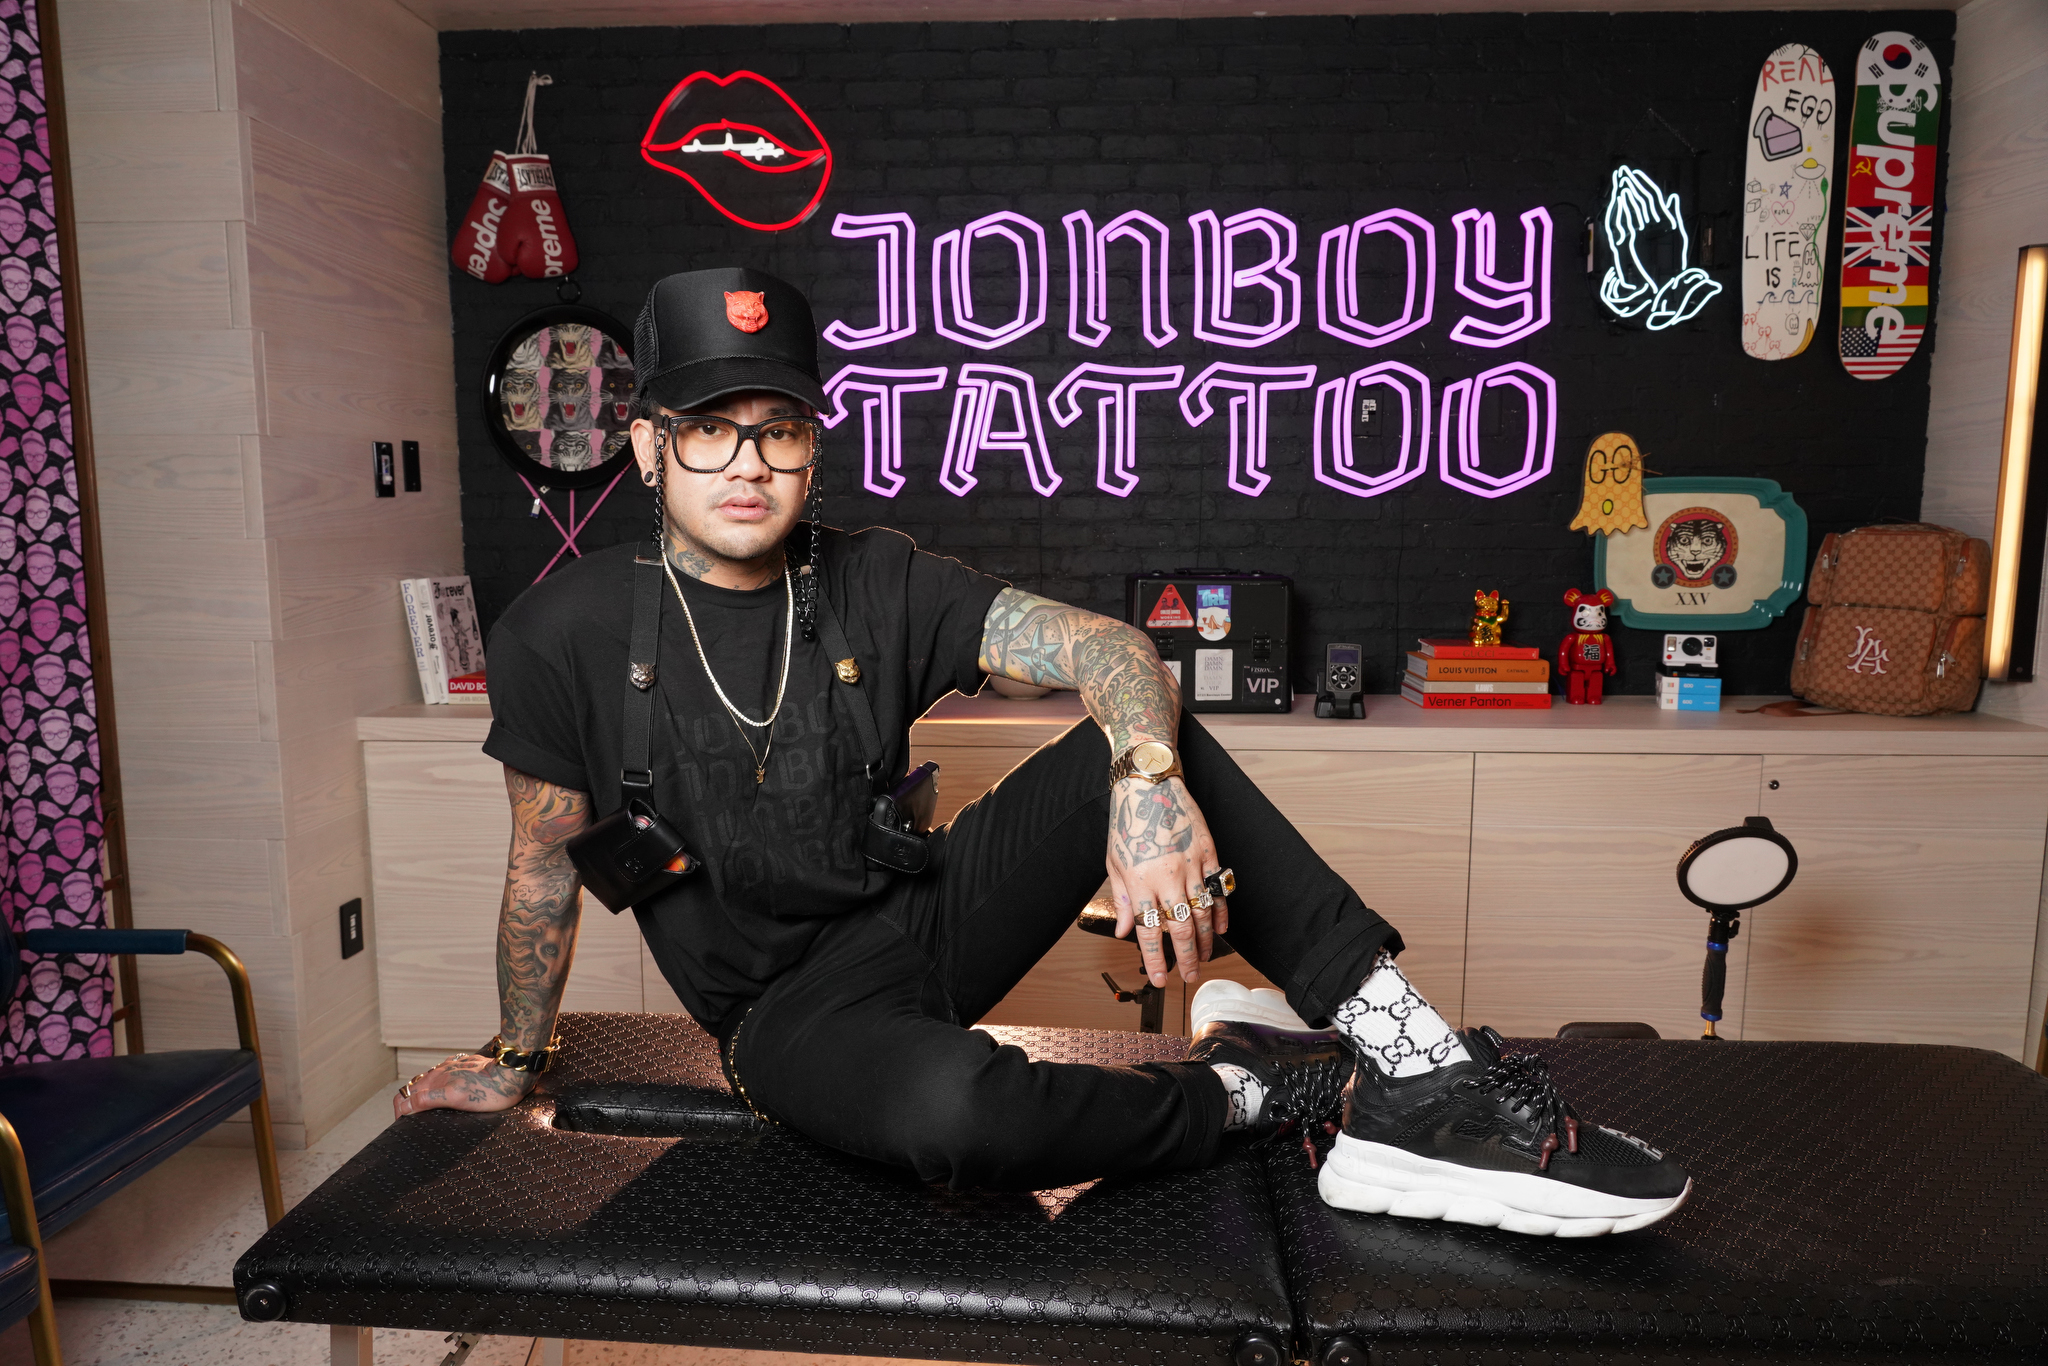 John Boy tattoo